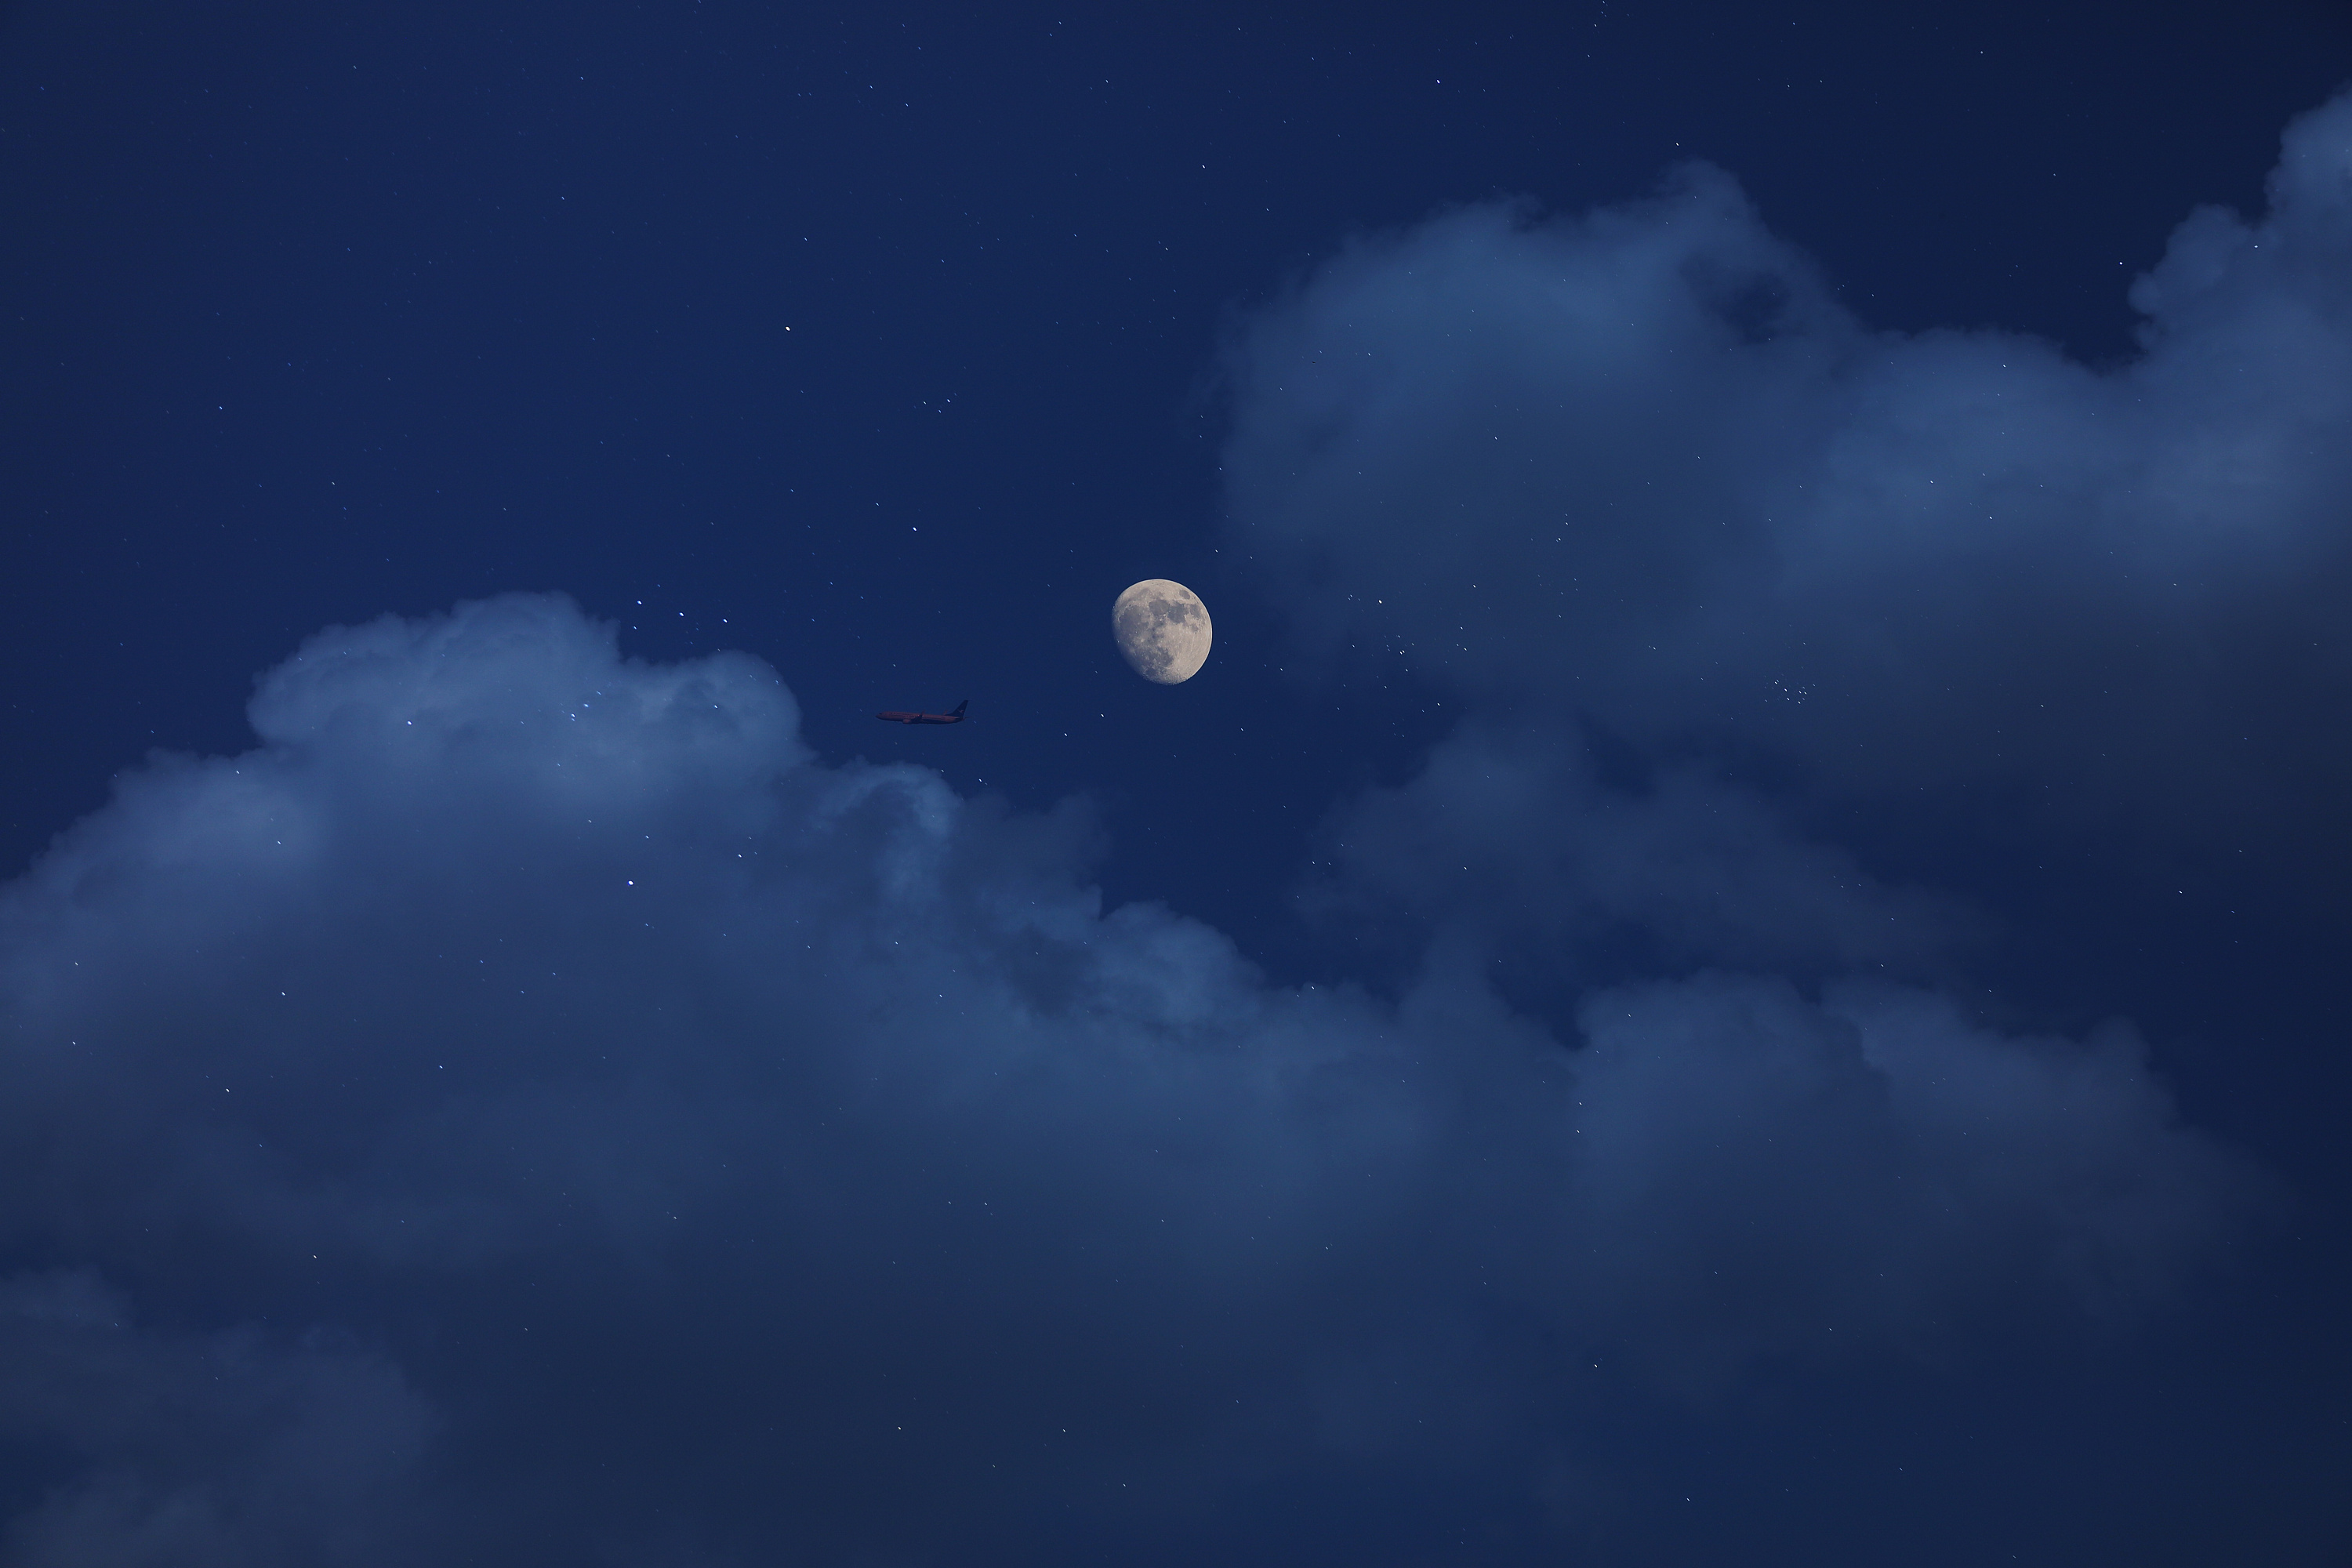 月球风景高清背景素材大图背景素材免费下载(图片编号:4800505)-六图网